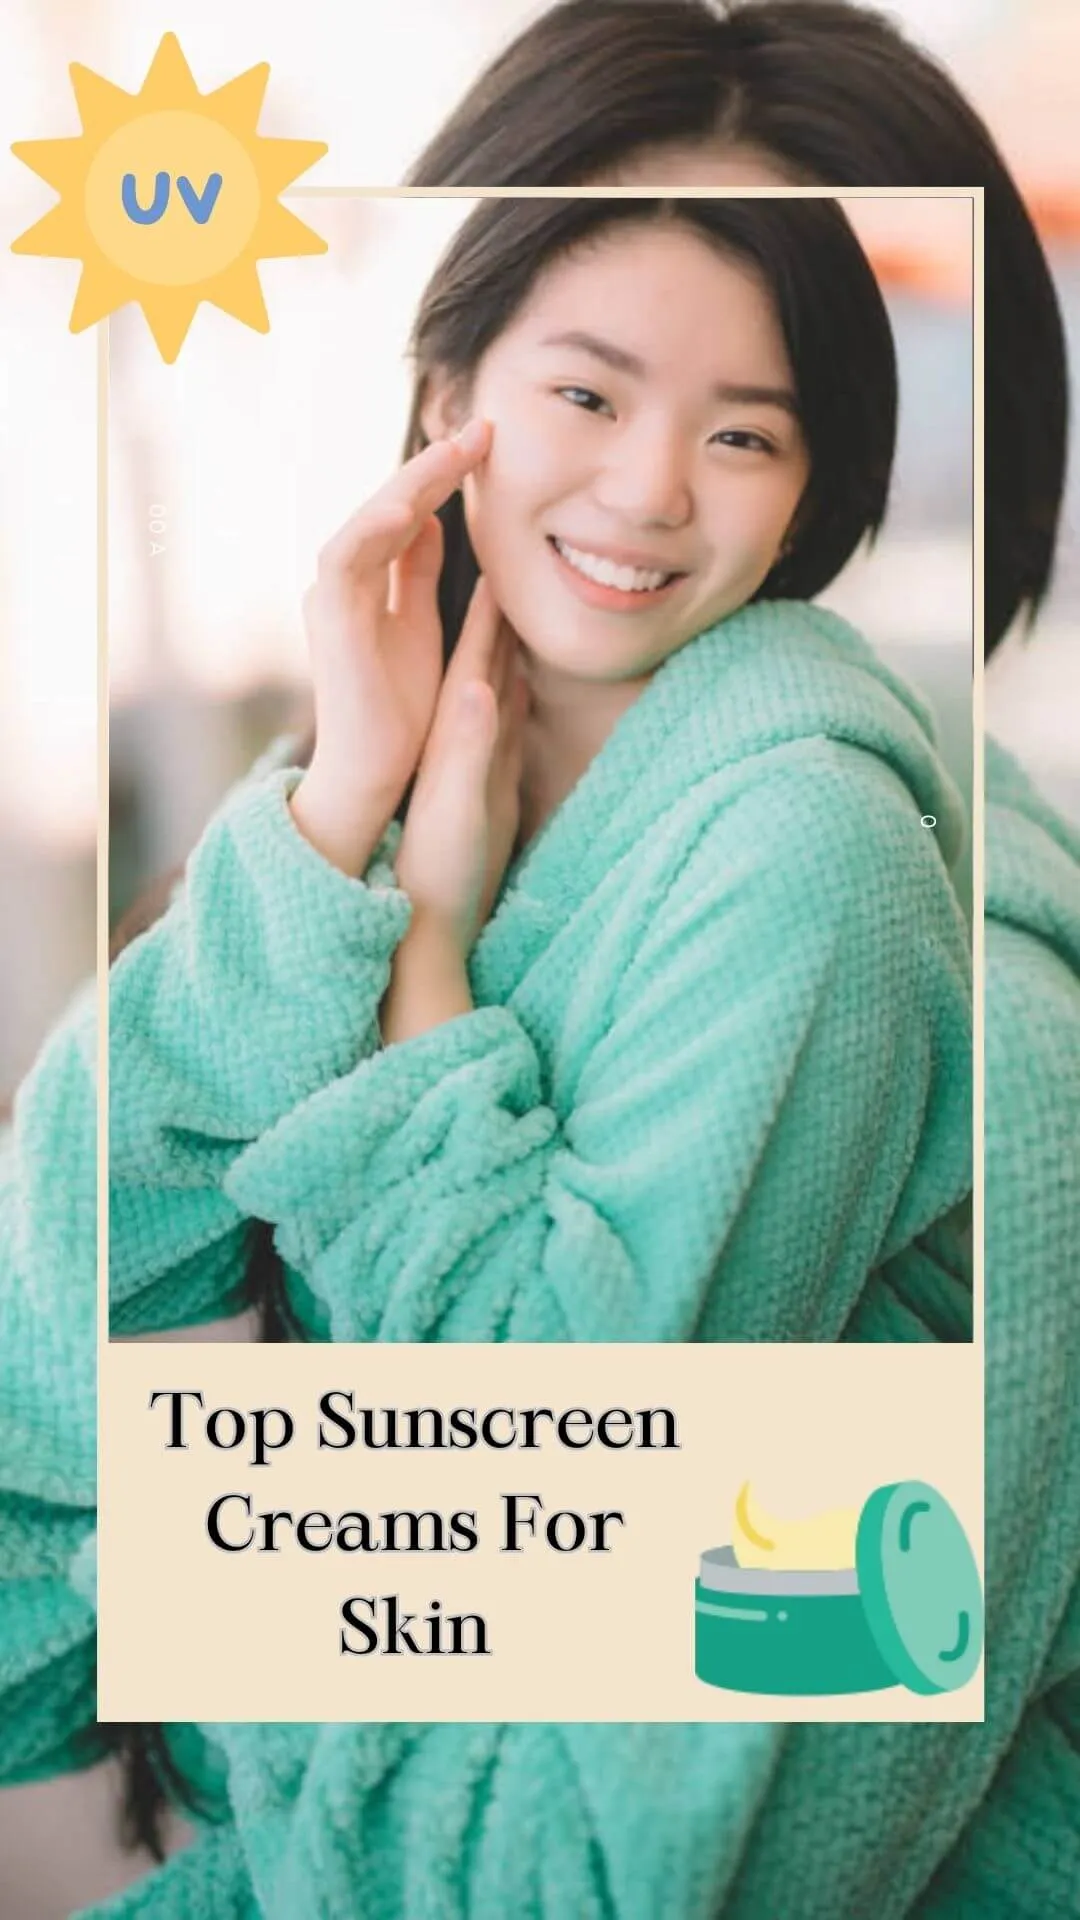 Top Sunscreen Creams For Skin